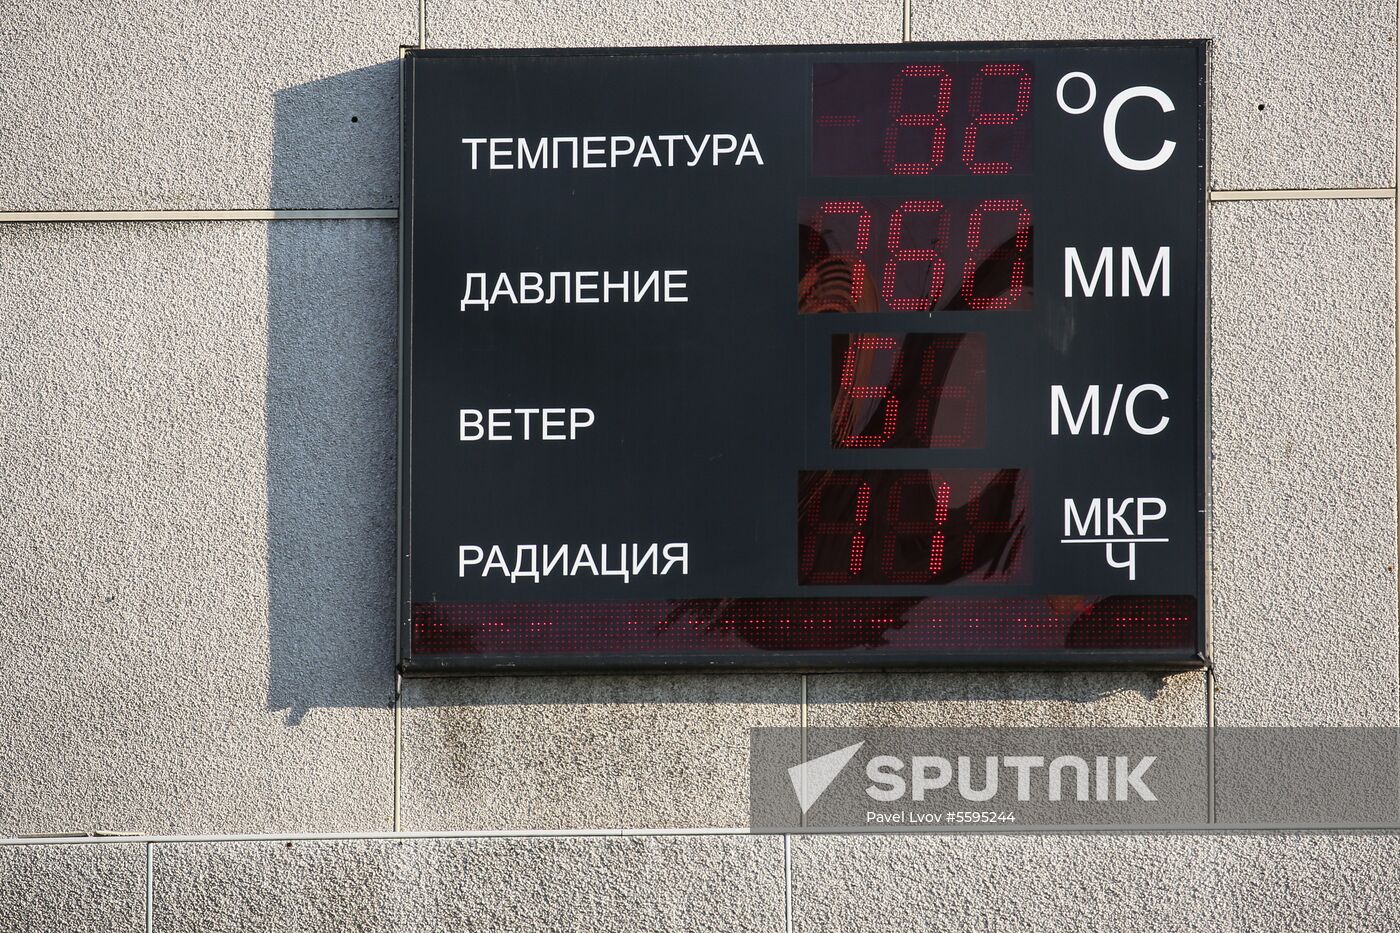 Temperature record in Murmansk